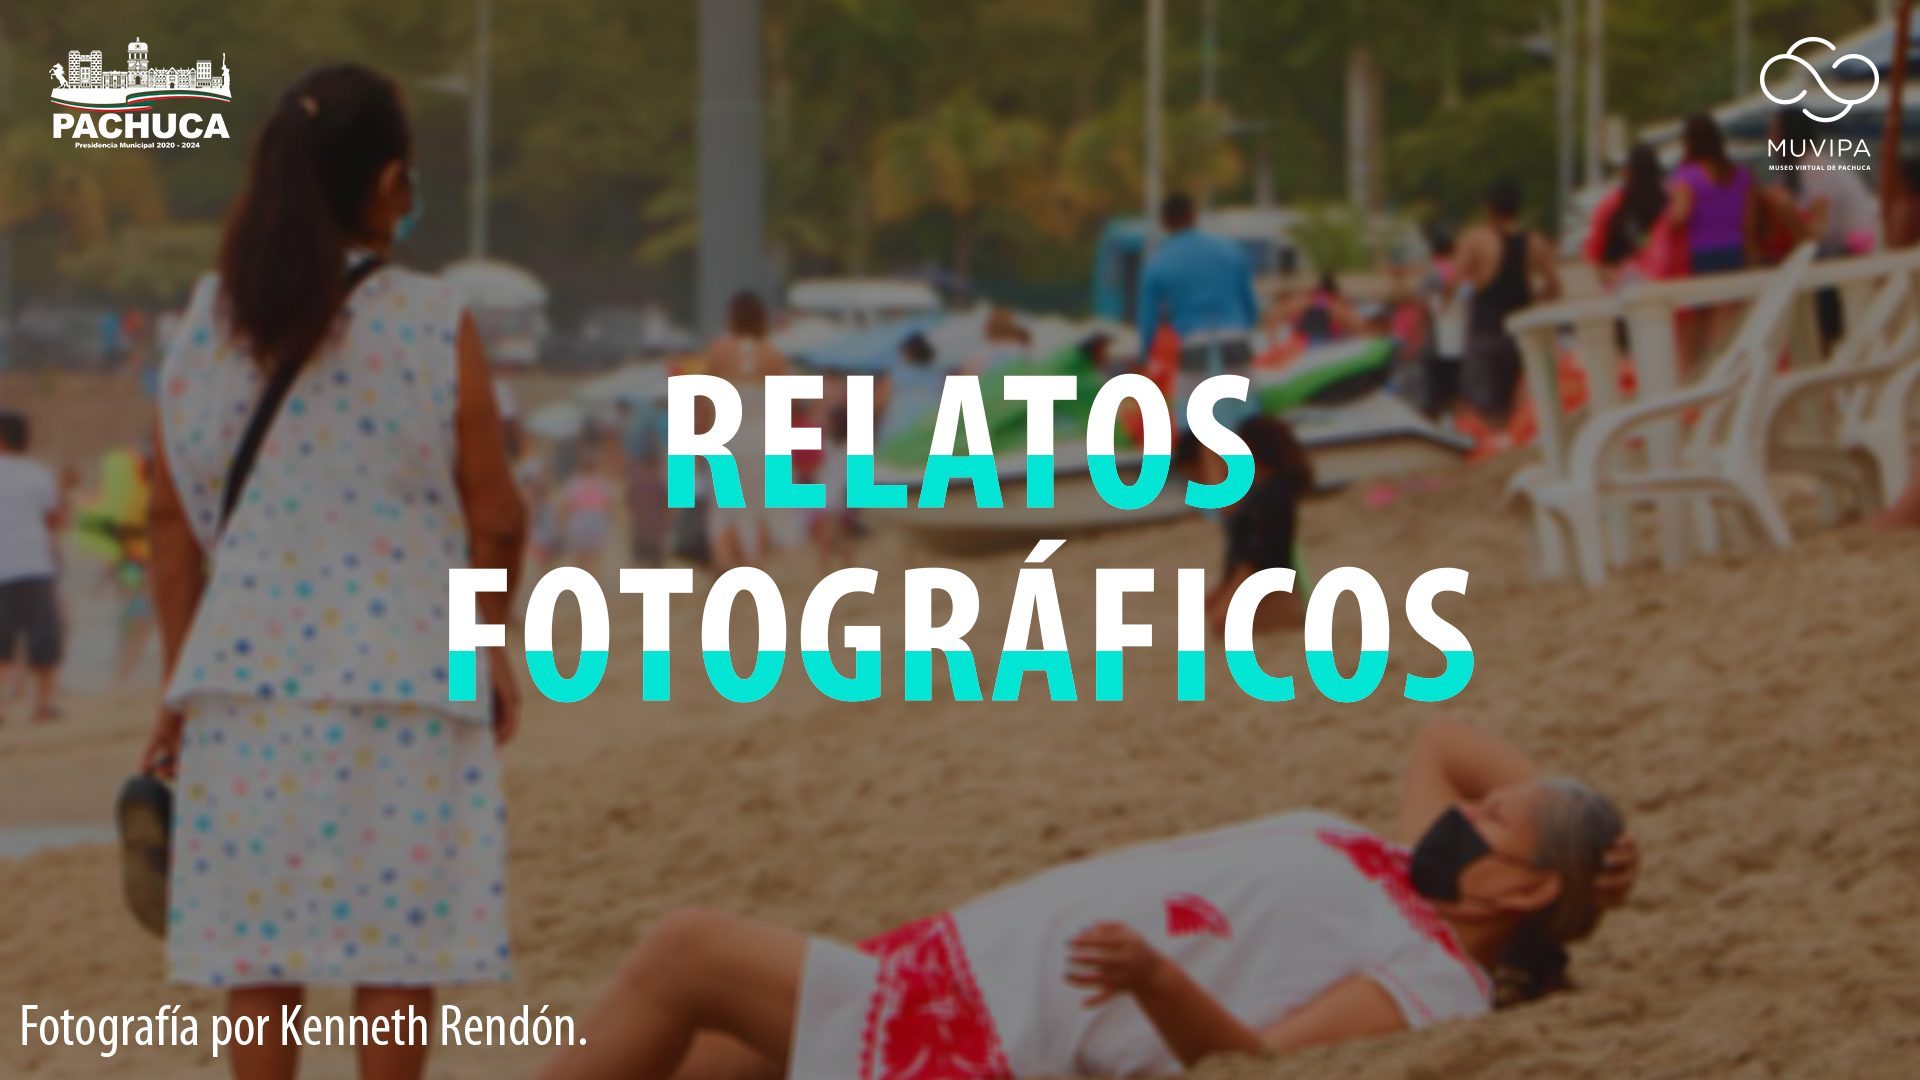 RELATOS FOTOGRÁFICOS PORTADA